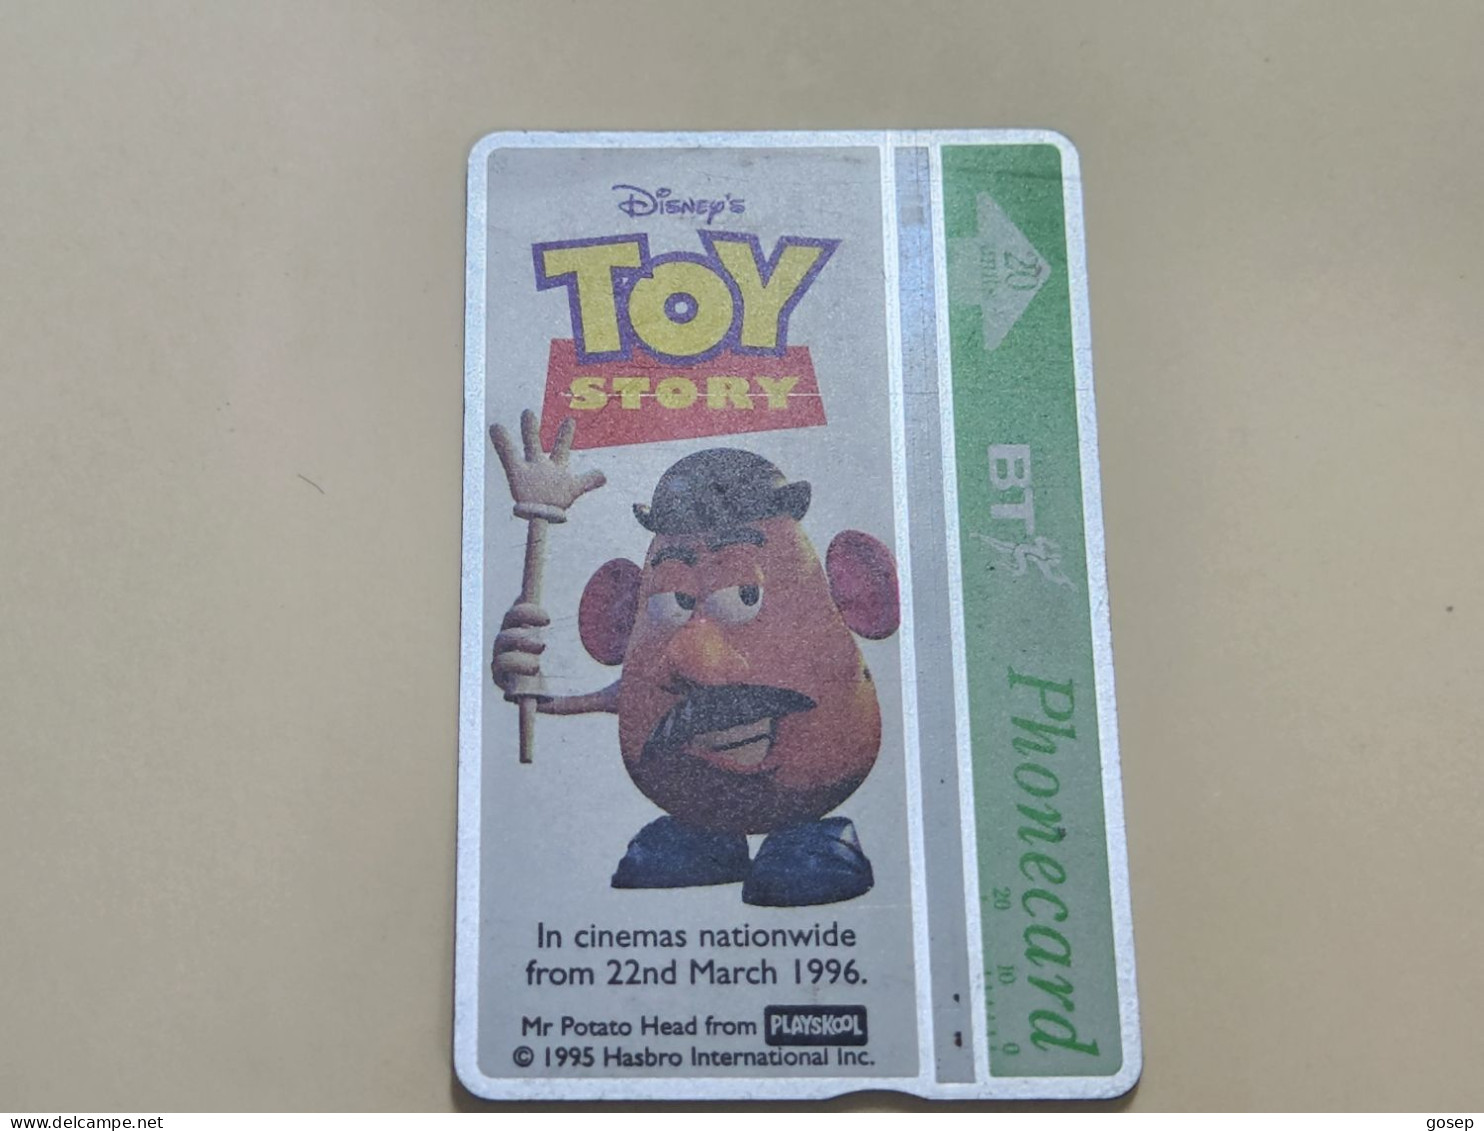 United Kingdom-(BTA148)Disney's Toy-1potato Head-(244)(20units)(662B07796)-price Cataloge 3.00£-used+1card Prepiad Free - BT Edición Publicitaria